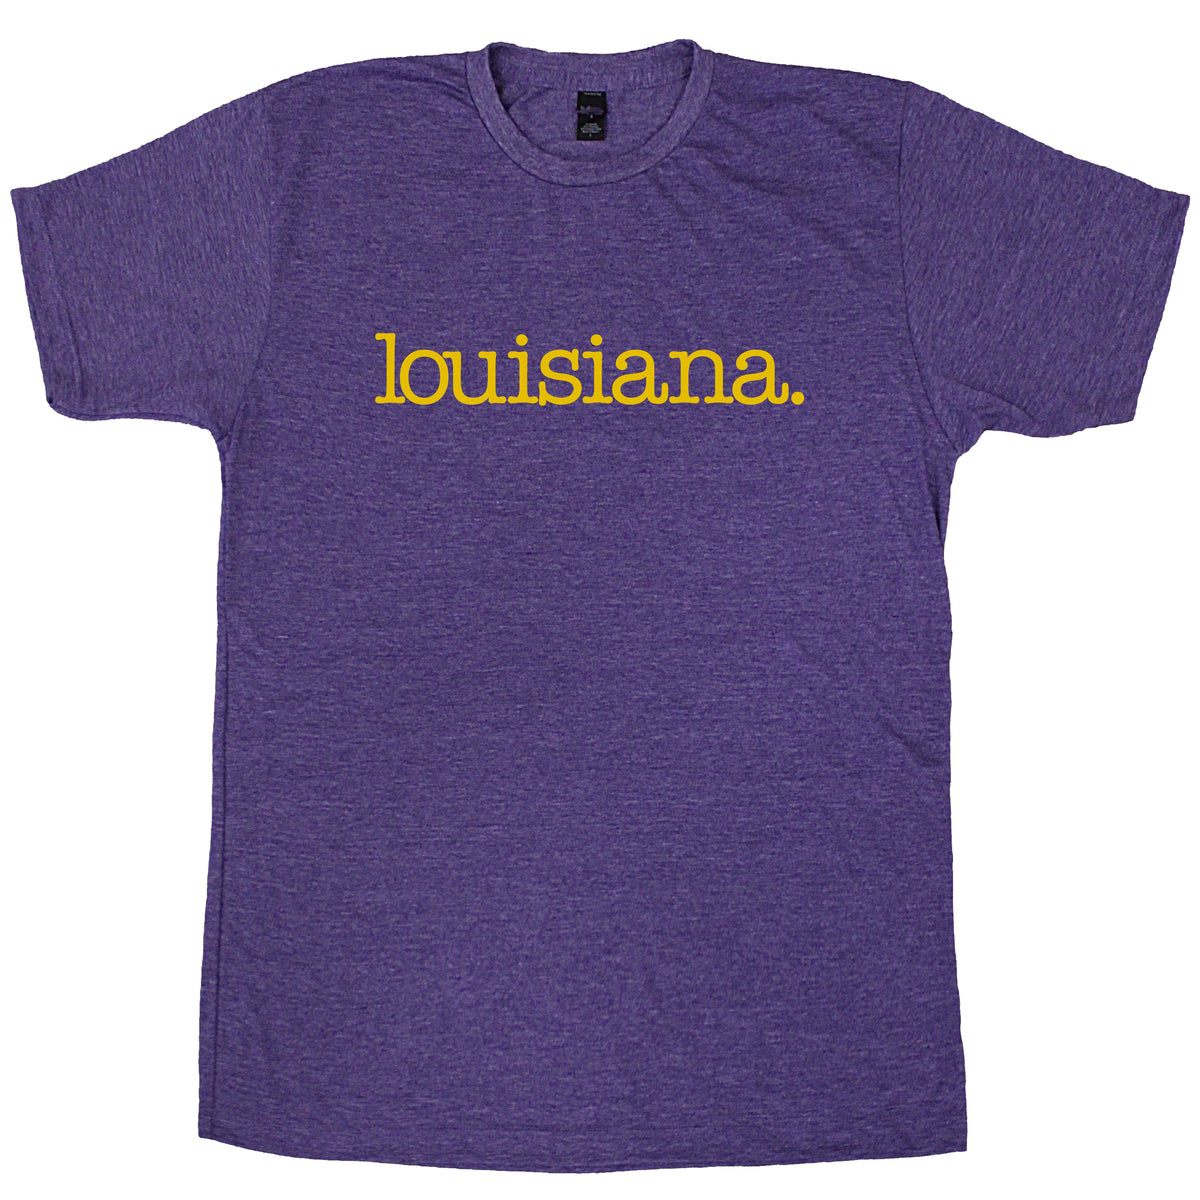 Louisiana. T-Shirt